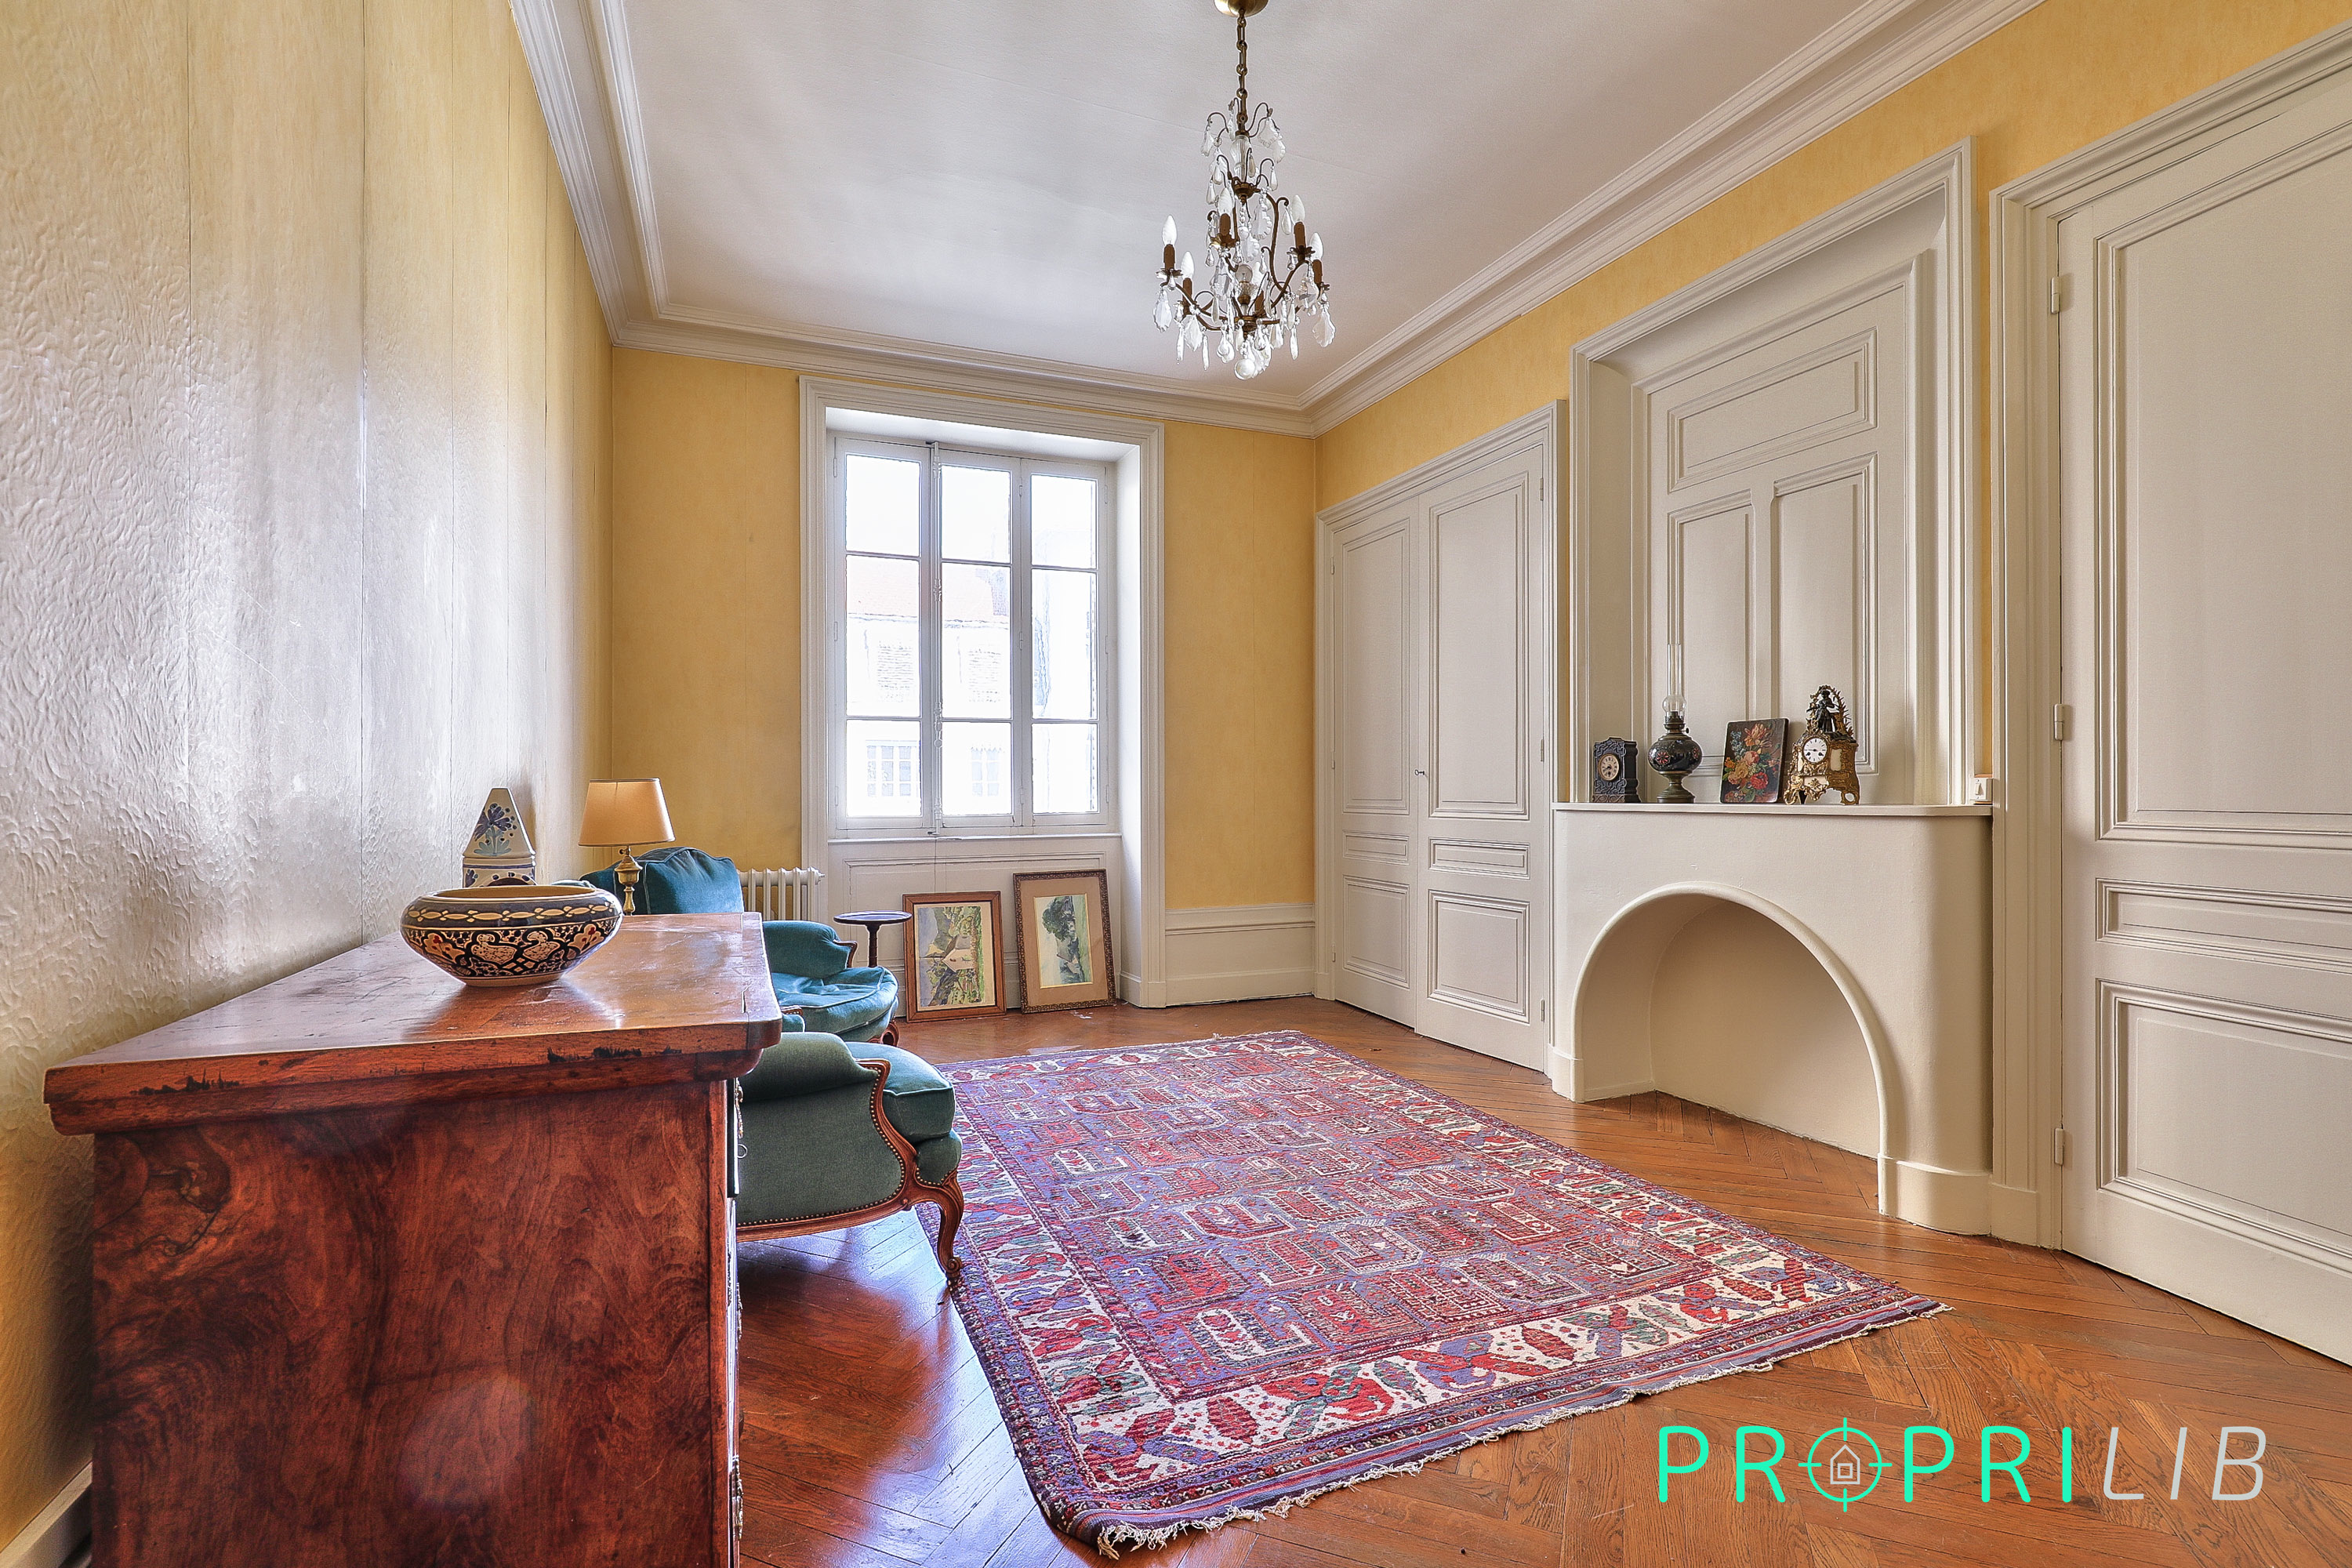 PropriLib l’agence immobilière en ligne vend cet appartement à Lyon 3ème